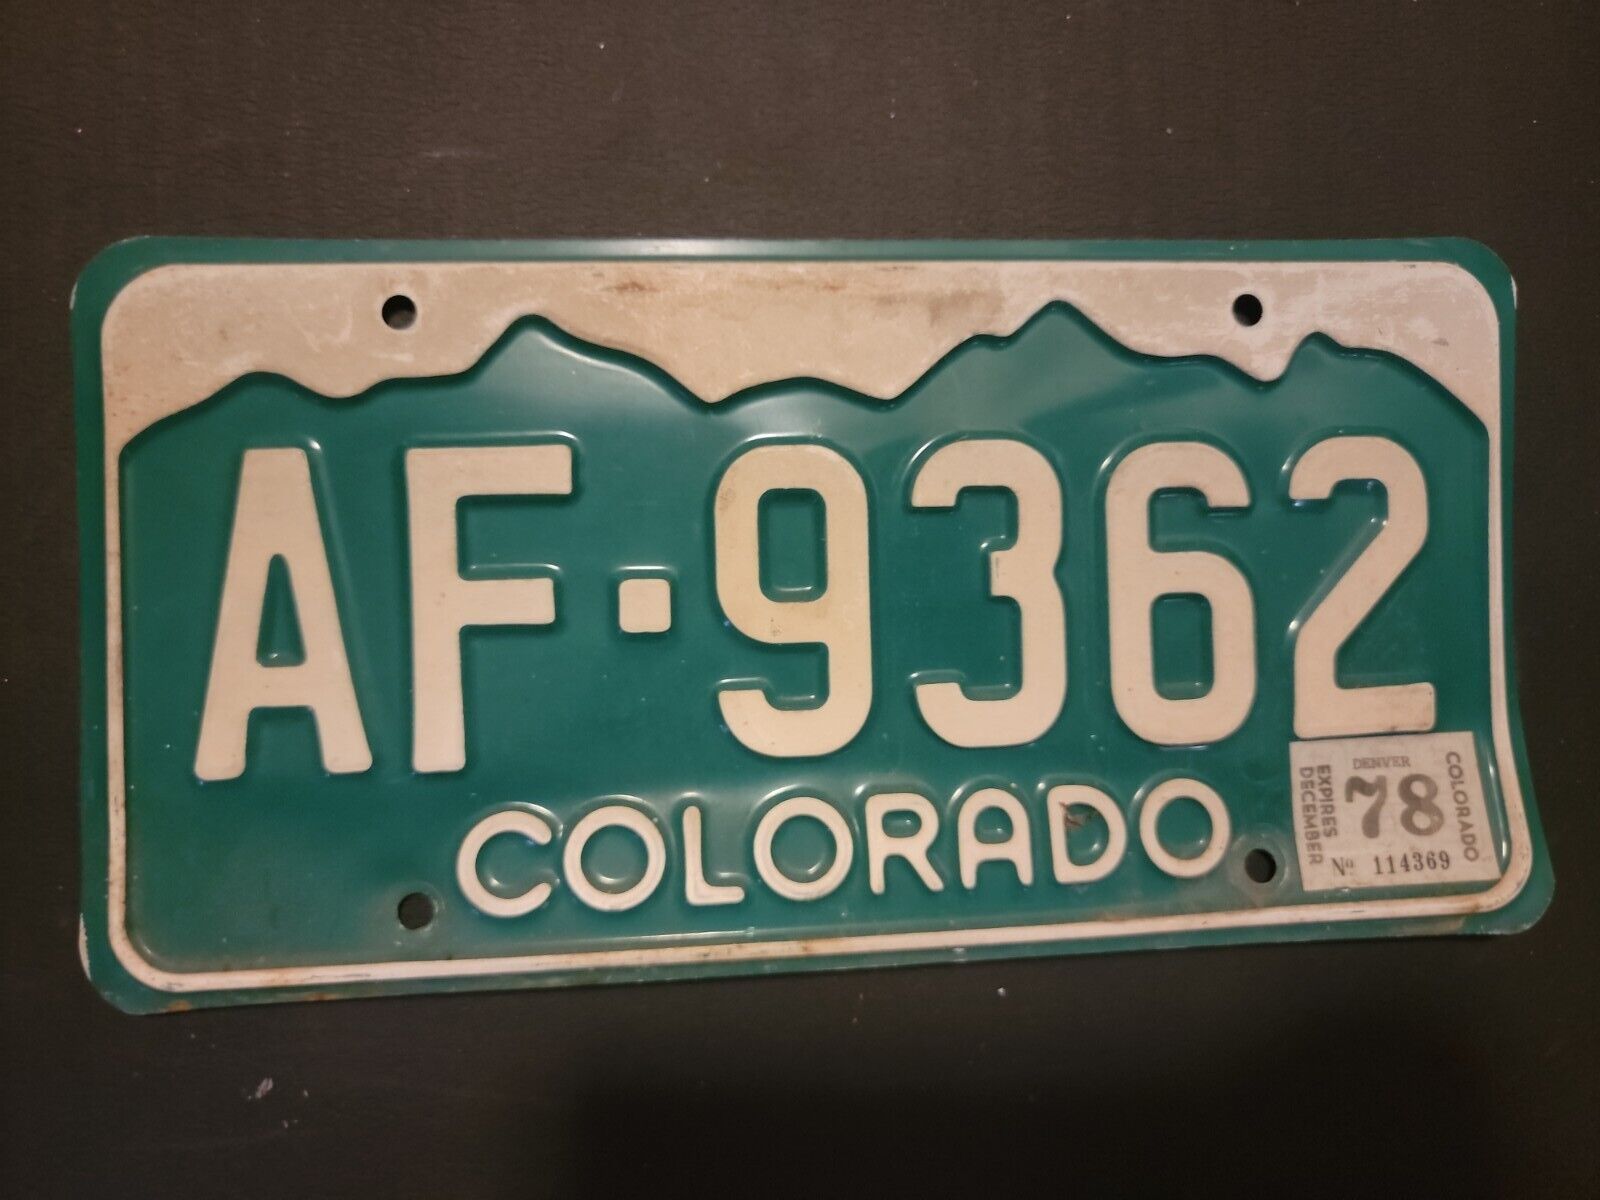 Vintage 1978  Colorado   License Plate  Af . 9362